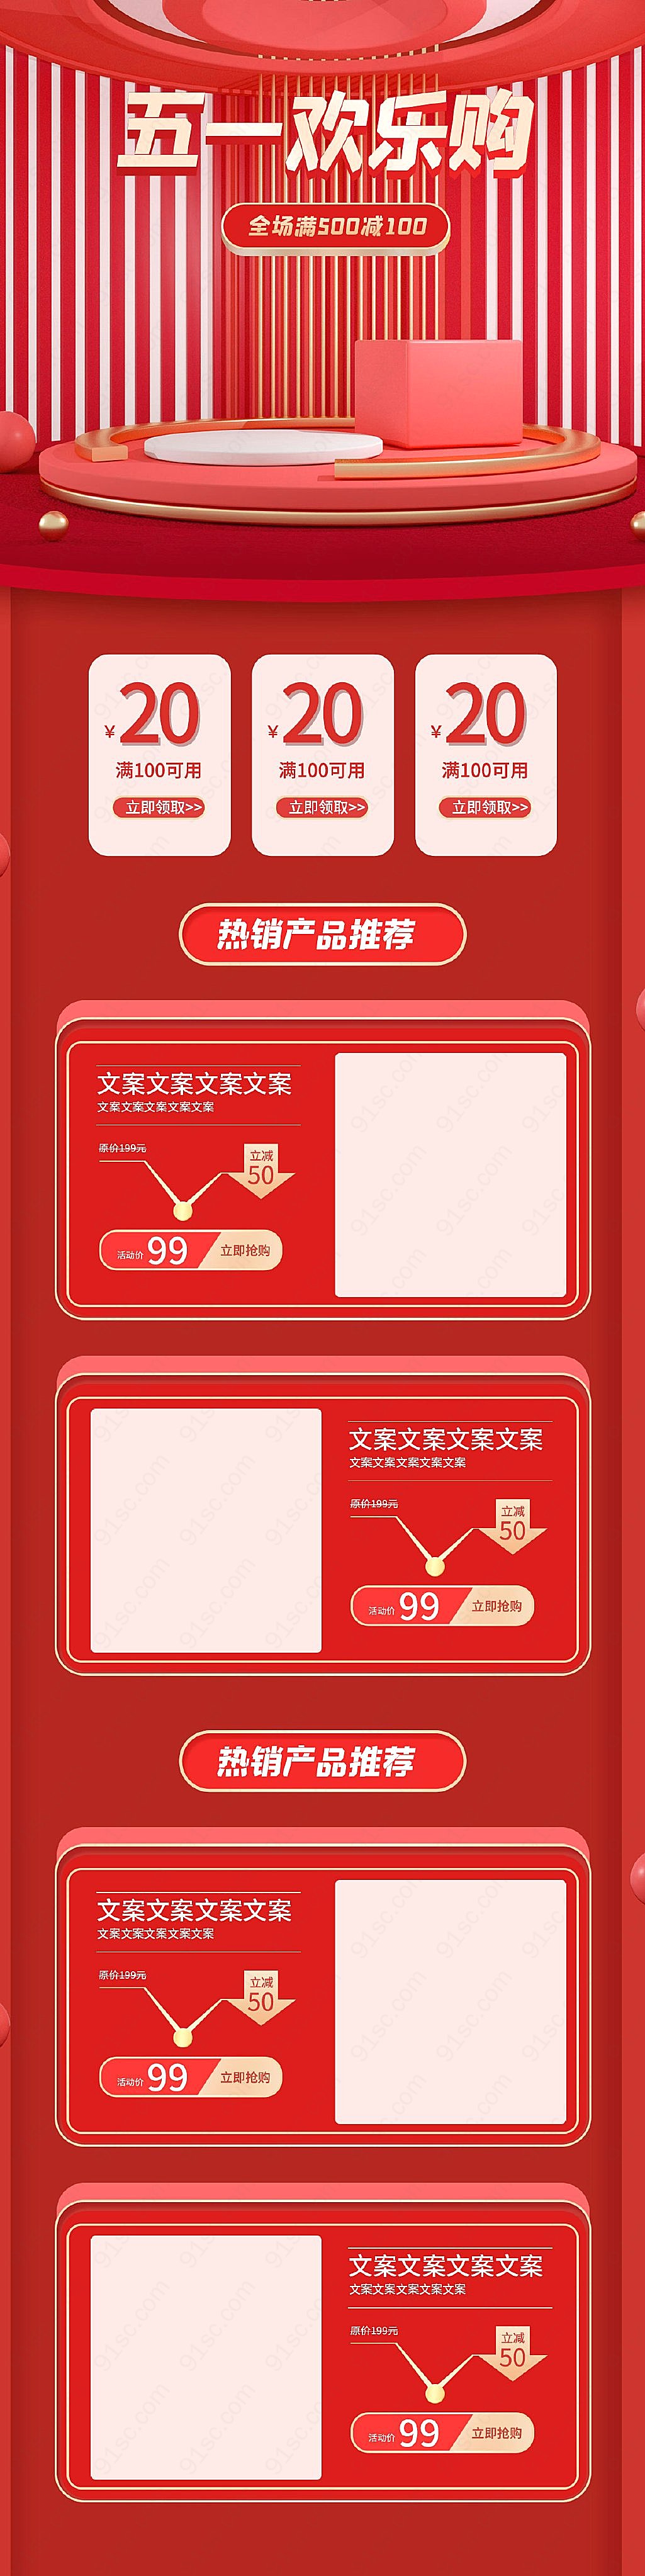 电商红色模板设计五一欢乐购热销商品推荐劳动节节日促销模板新媒体用图下载